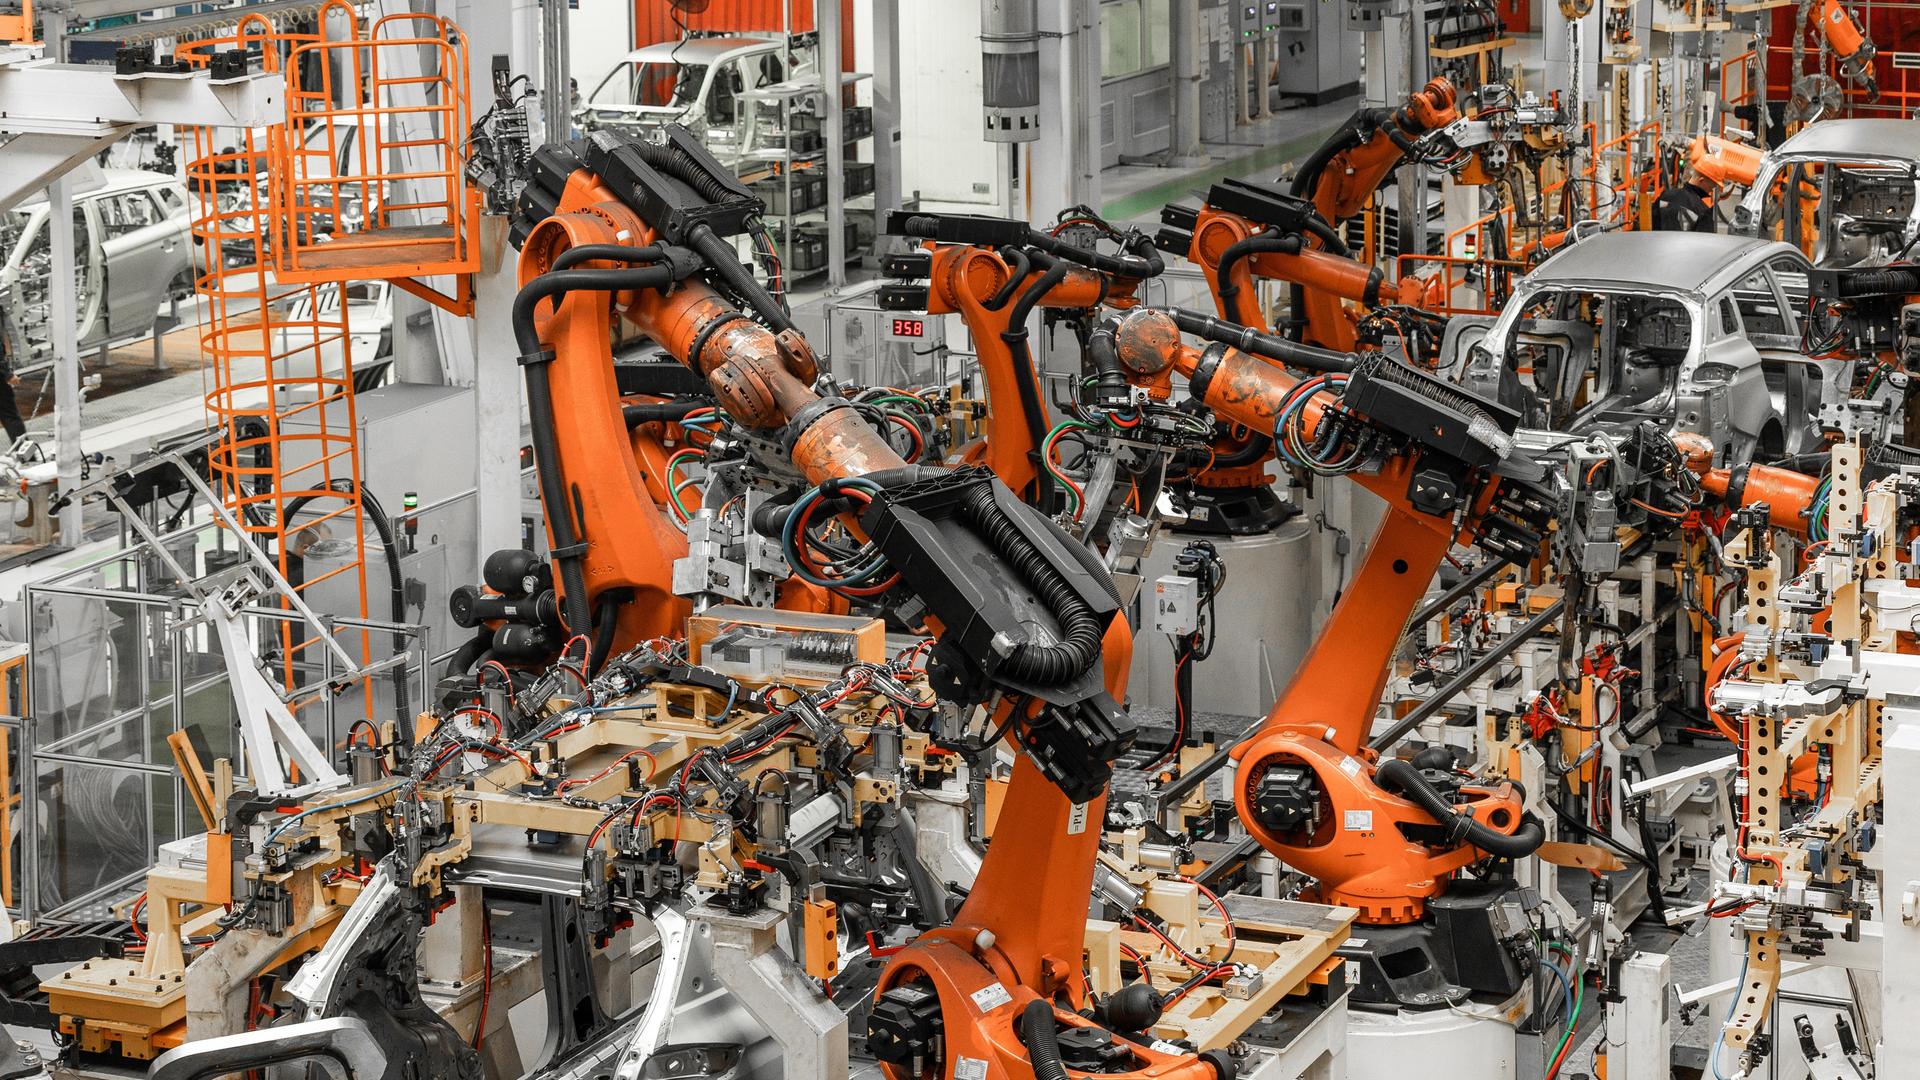 Blick in die Produktionshalle eines Automobilherstellers mit vielen Geräten und Robotern.